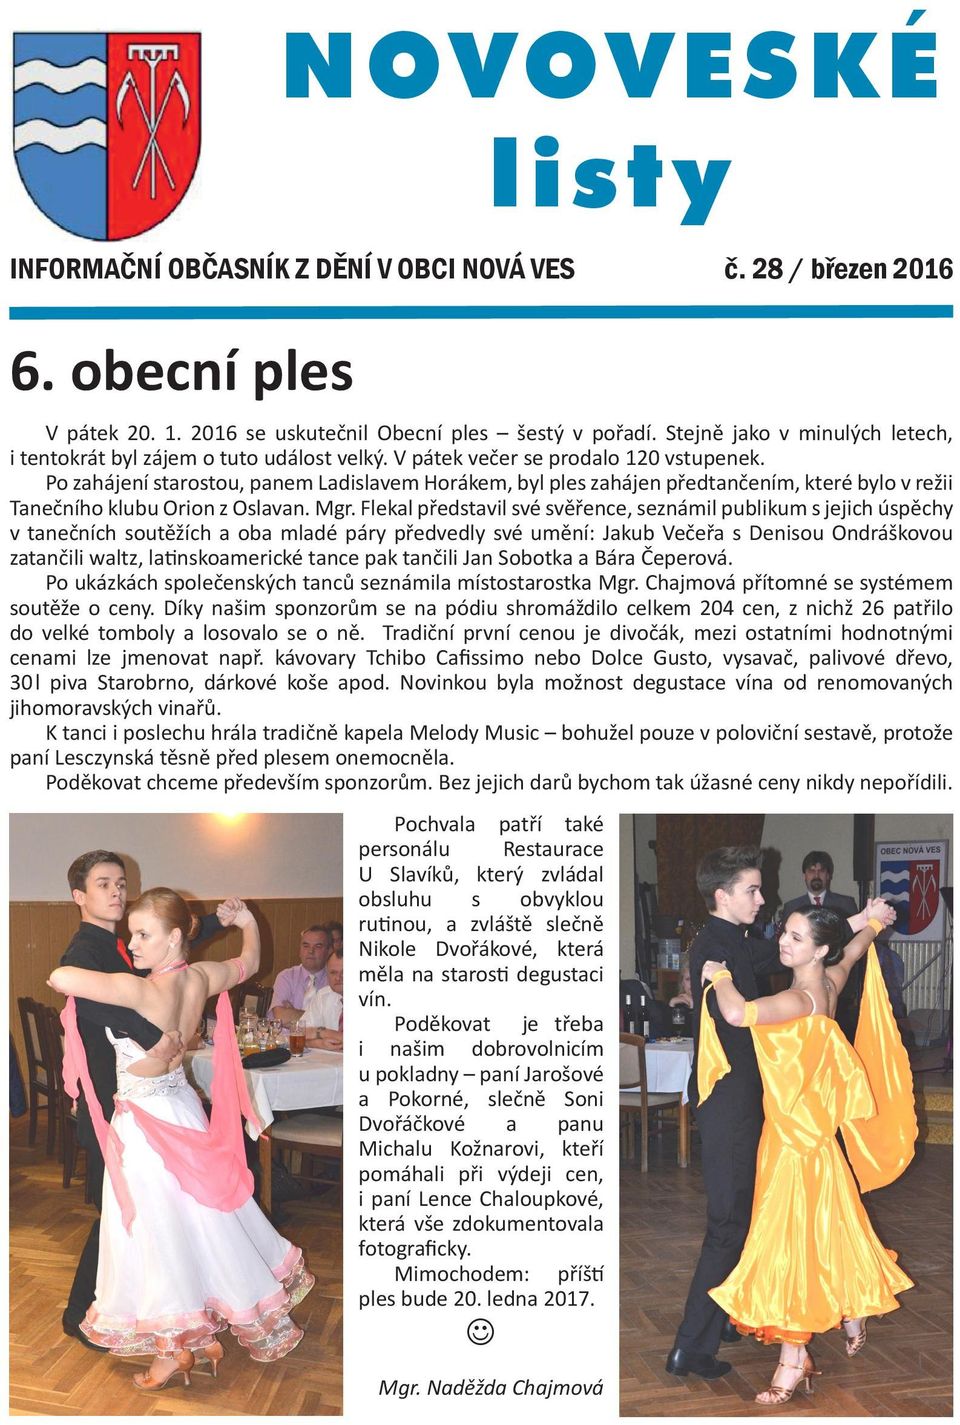 Po zahájení starostou, panem Ladislavem Horákem, byl ples zahájen předtančením, které bylo v režii Tanečního klubu Orion z Oslavan. Mgr.